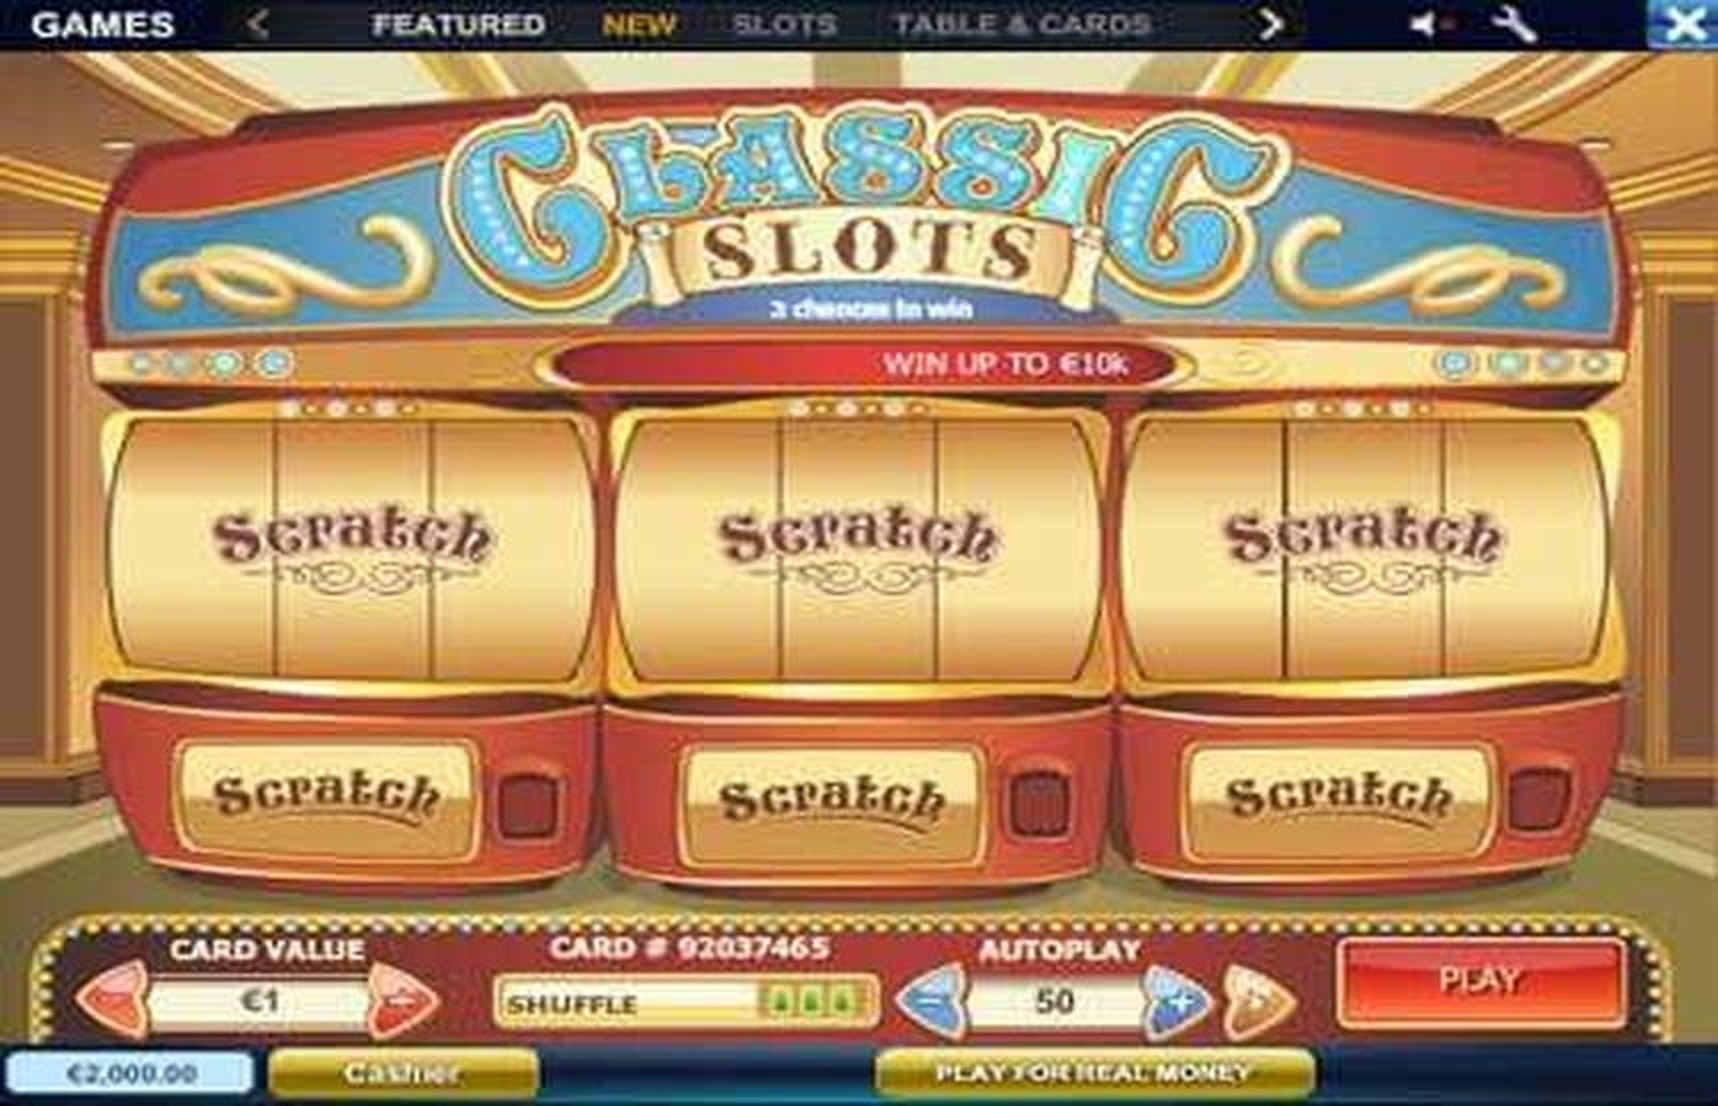 Classic Slot Scratch demo